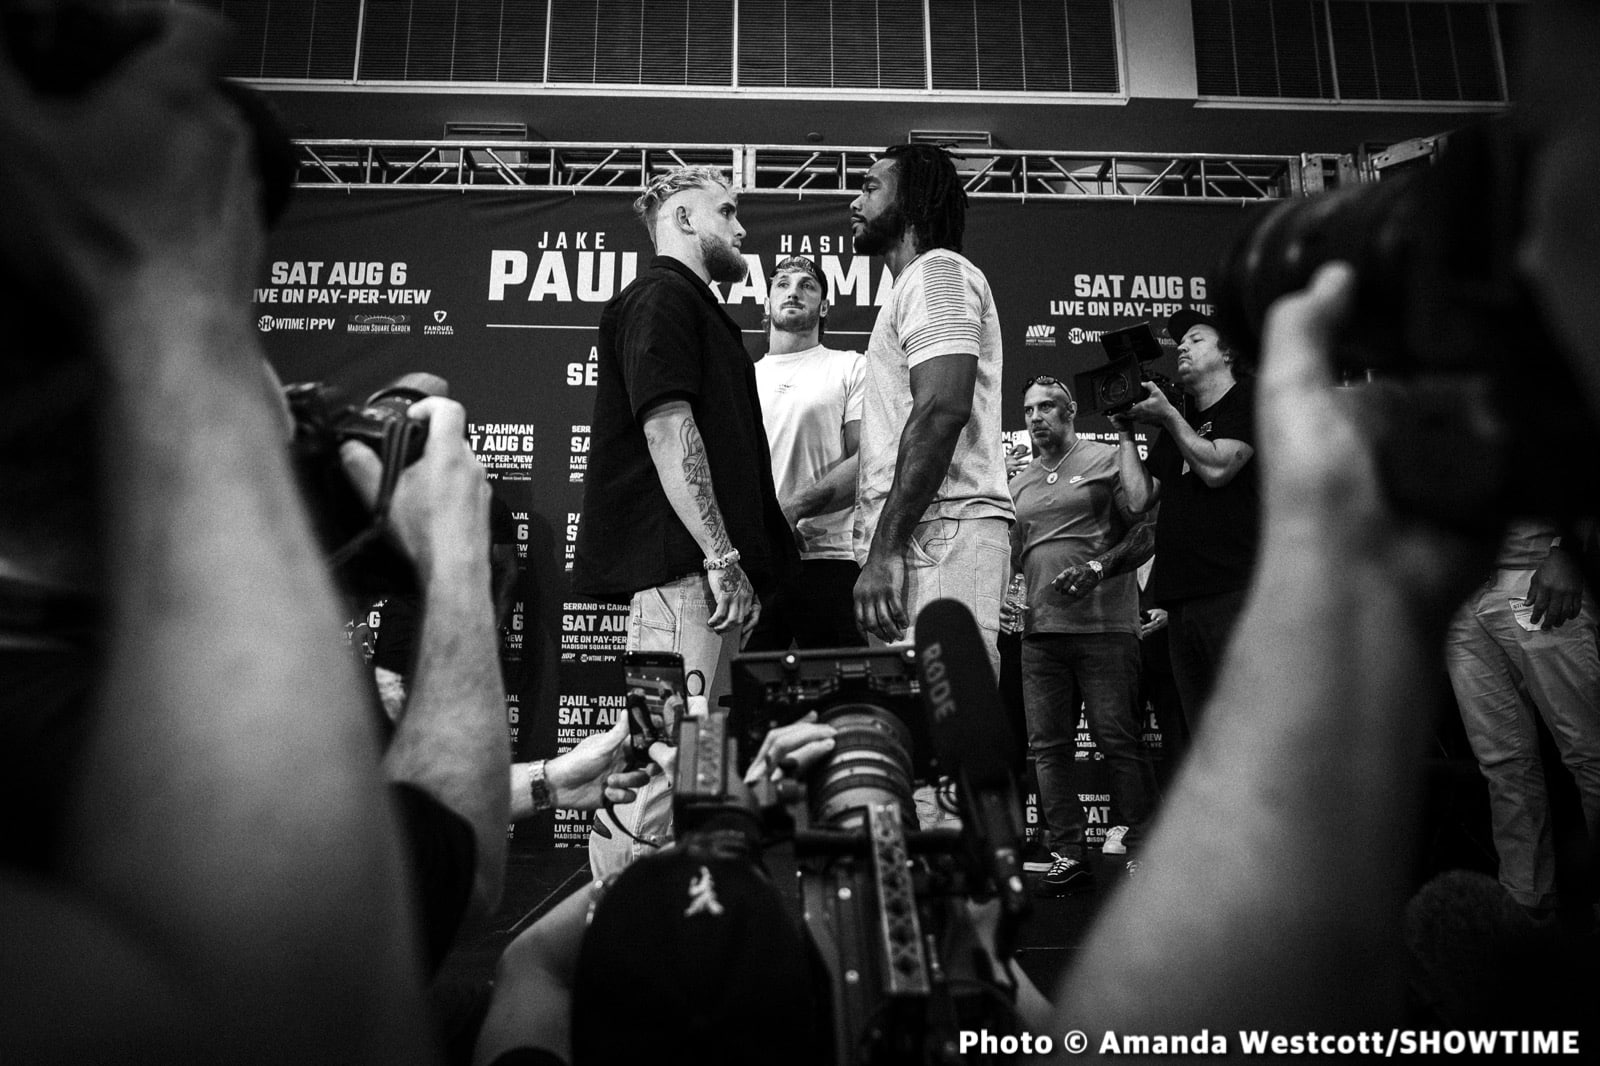 Image: Jake Paul And Hasim Rahman Jr. Trade Verbal Punches At Kickoff Presser